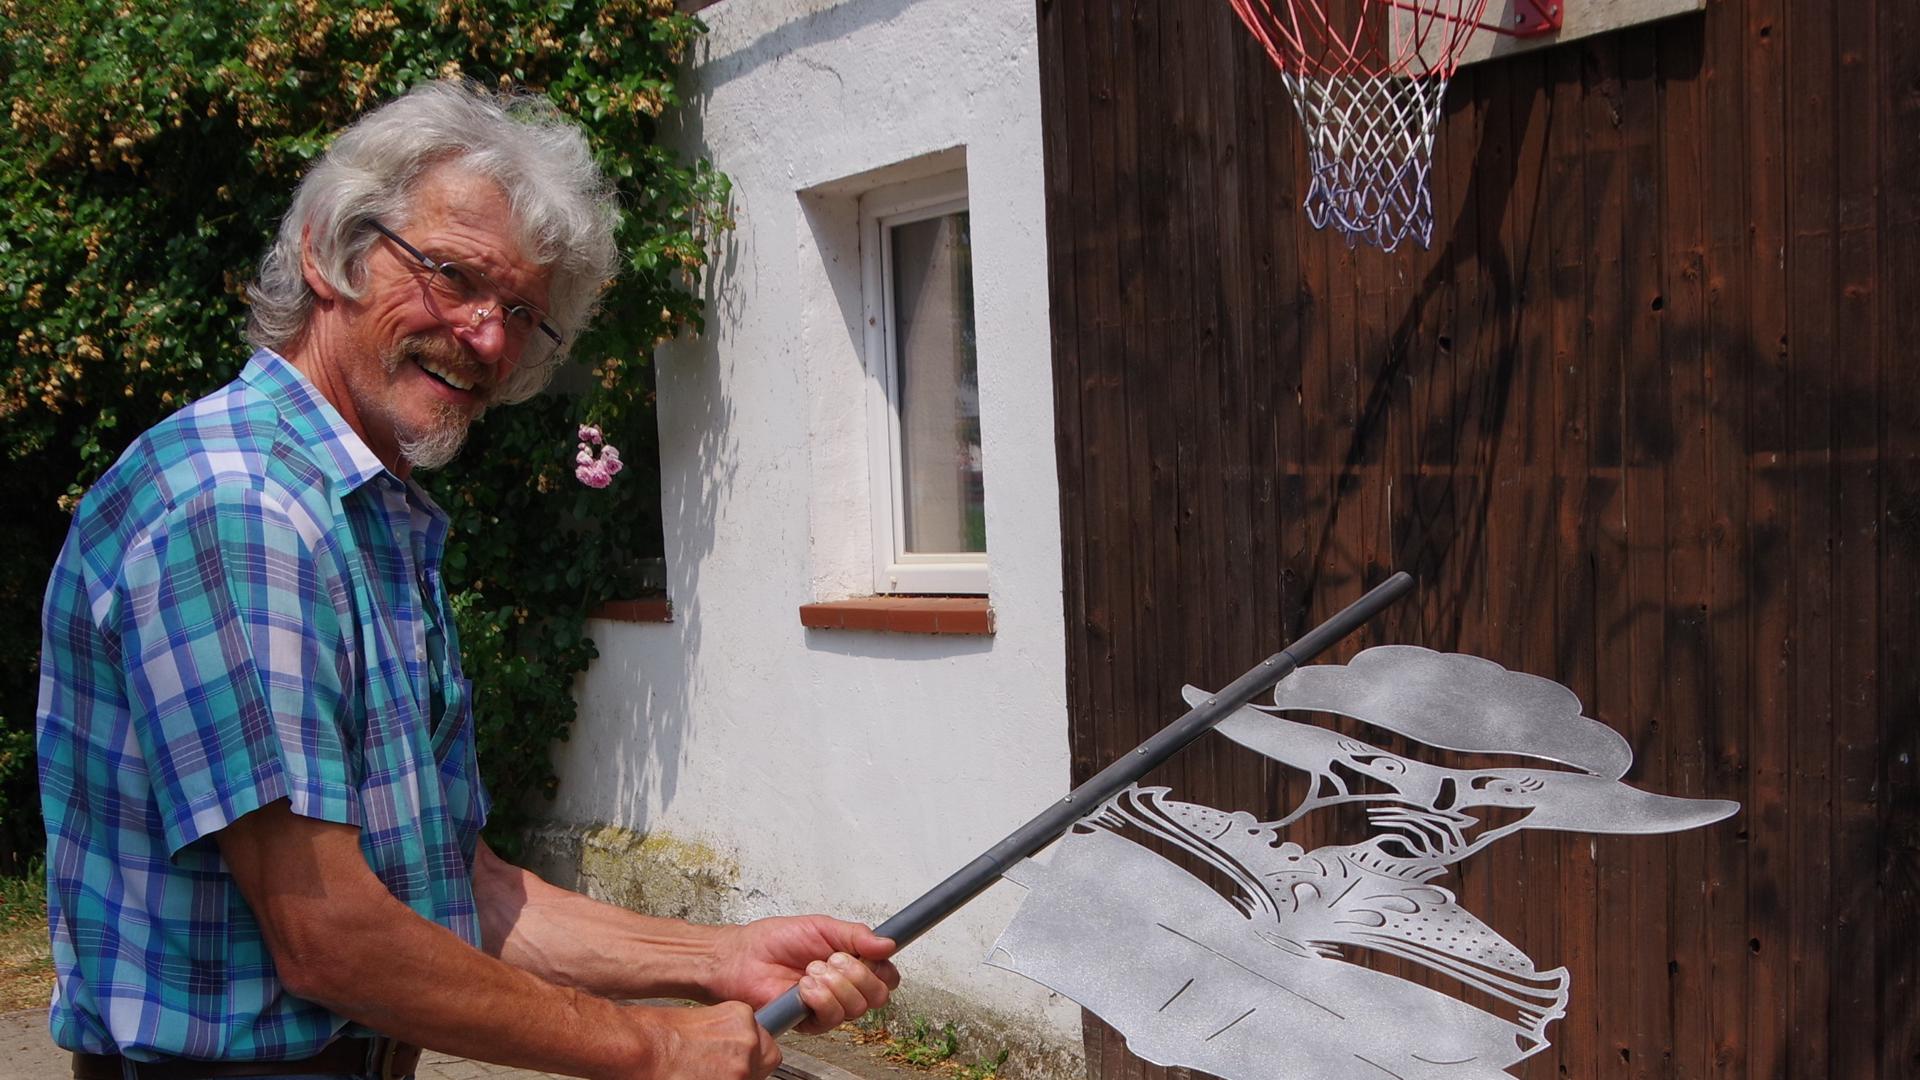 Ein erfahrener Kunsthandwerker, der sich alle Kniffe selbst beigebracht hat: Raimund Müller prüft das Schattenspiel seiner neusten Wetterfahne.